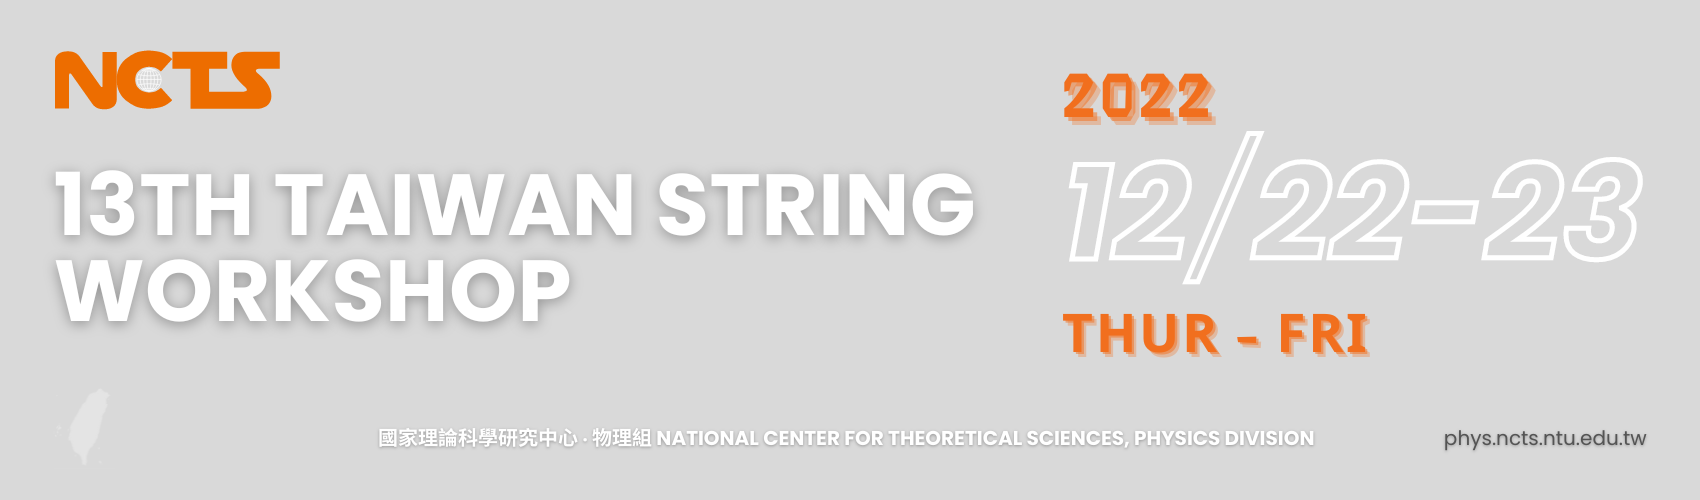 13th Taiwan String Workshop